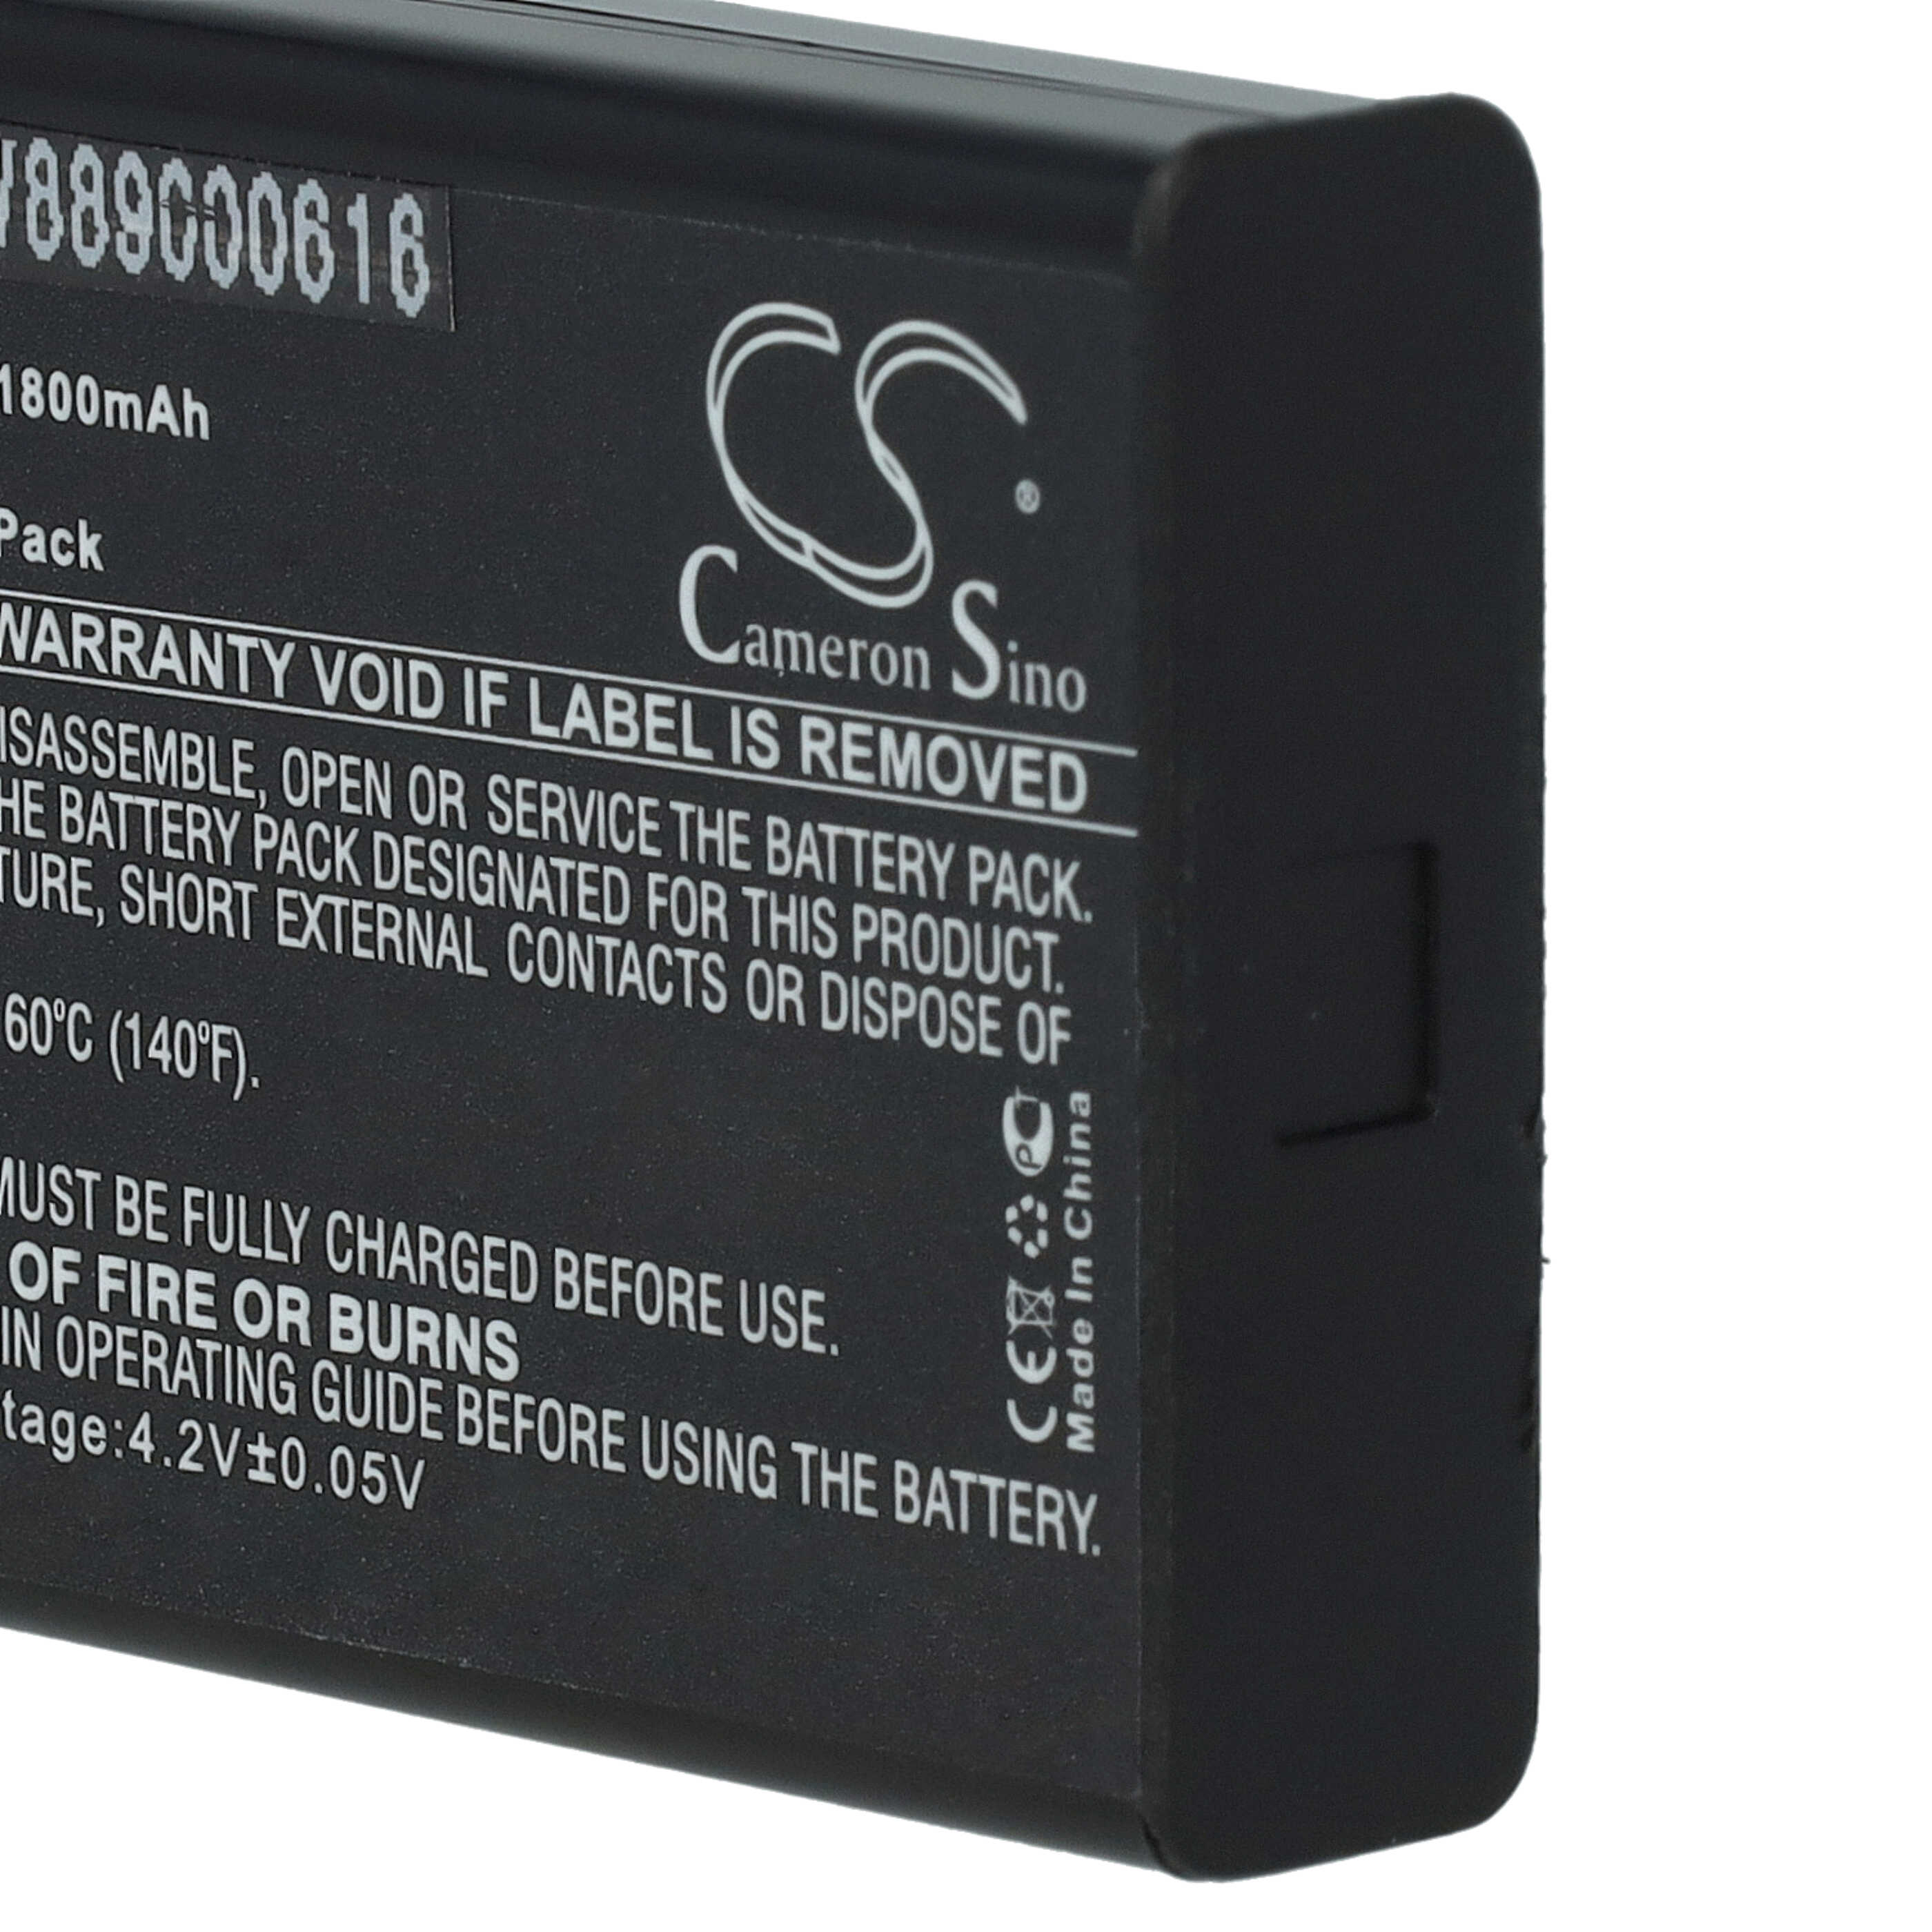 Akumulator do przyrządu pomiarowego zamiennik EXFO CGA-E/111GAE, GP-1001, XW-EX003 - 1800 mAh 3,7 V Li-Ion